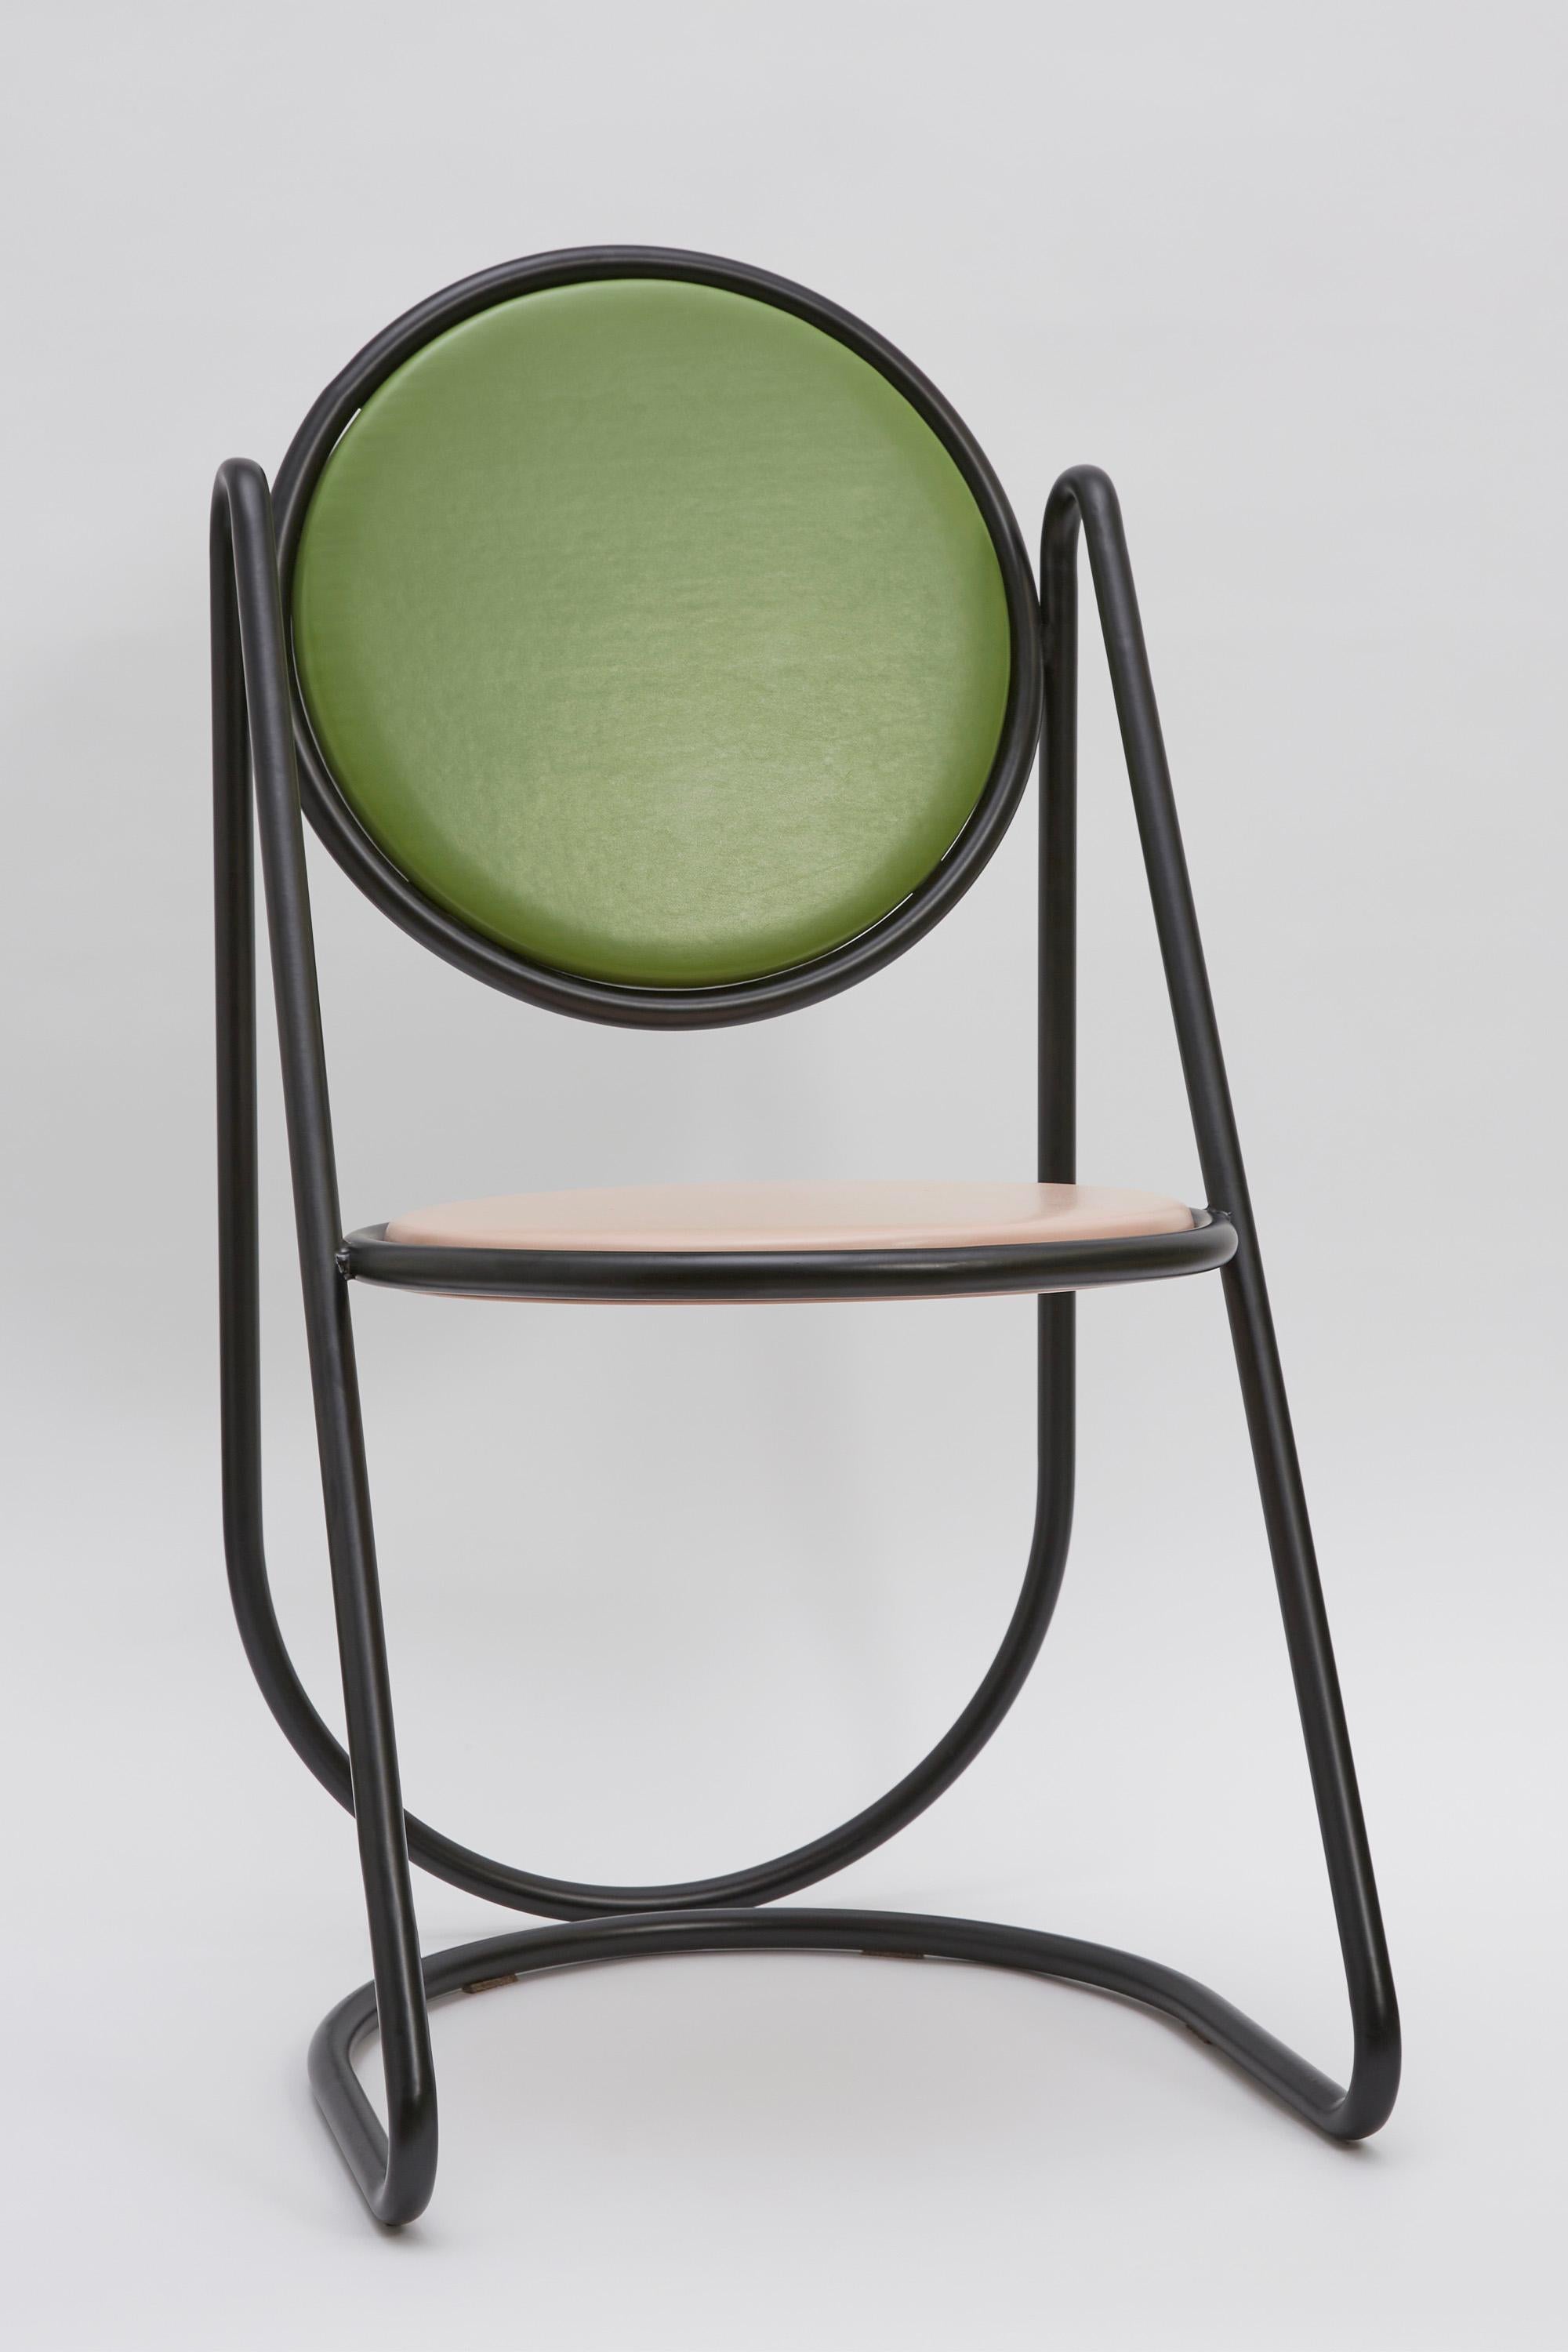 Dramatique et sculpturale, cette chaise de la Collection U-Disk ne manquera pas d'attirer l'attention où qu'elle soit placée. Complément naturel d'un décor d'inspiration rétro, il se compose d'une structure tubulaire continue et astucieusement pliée